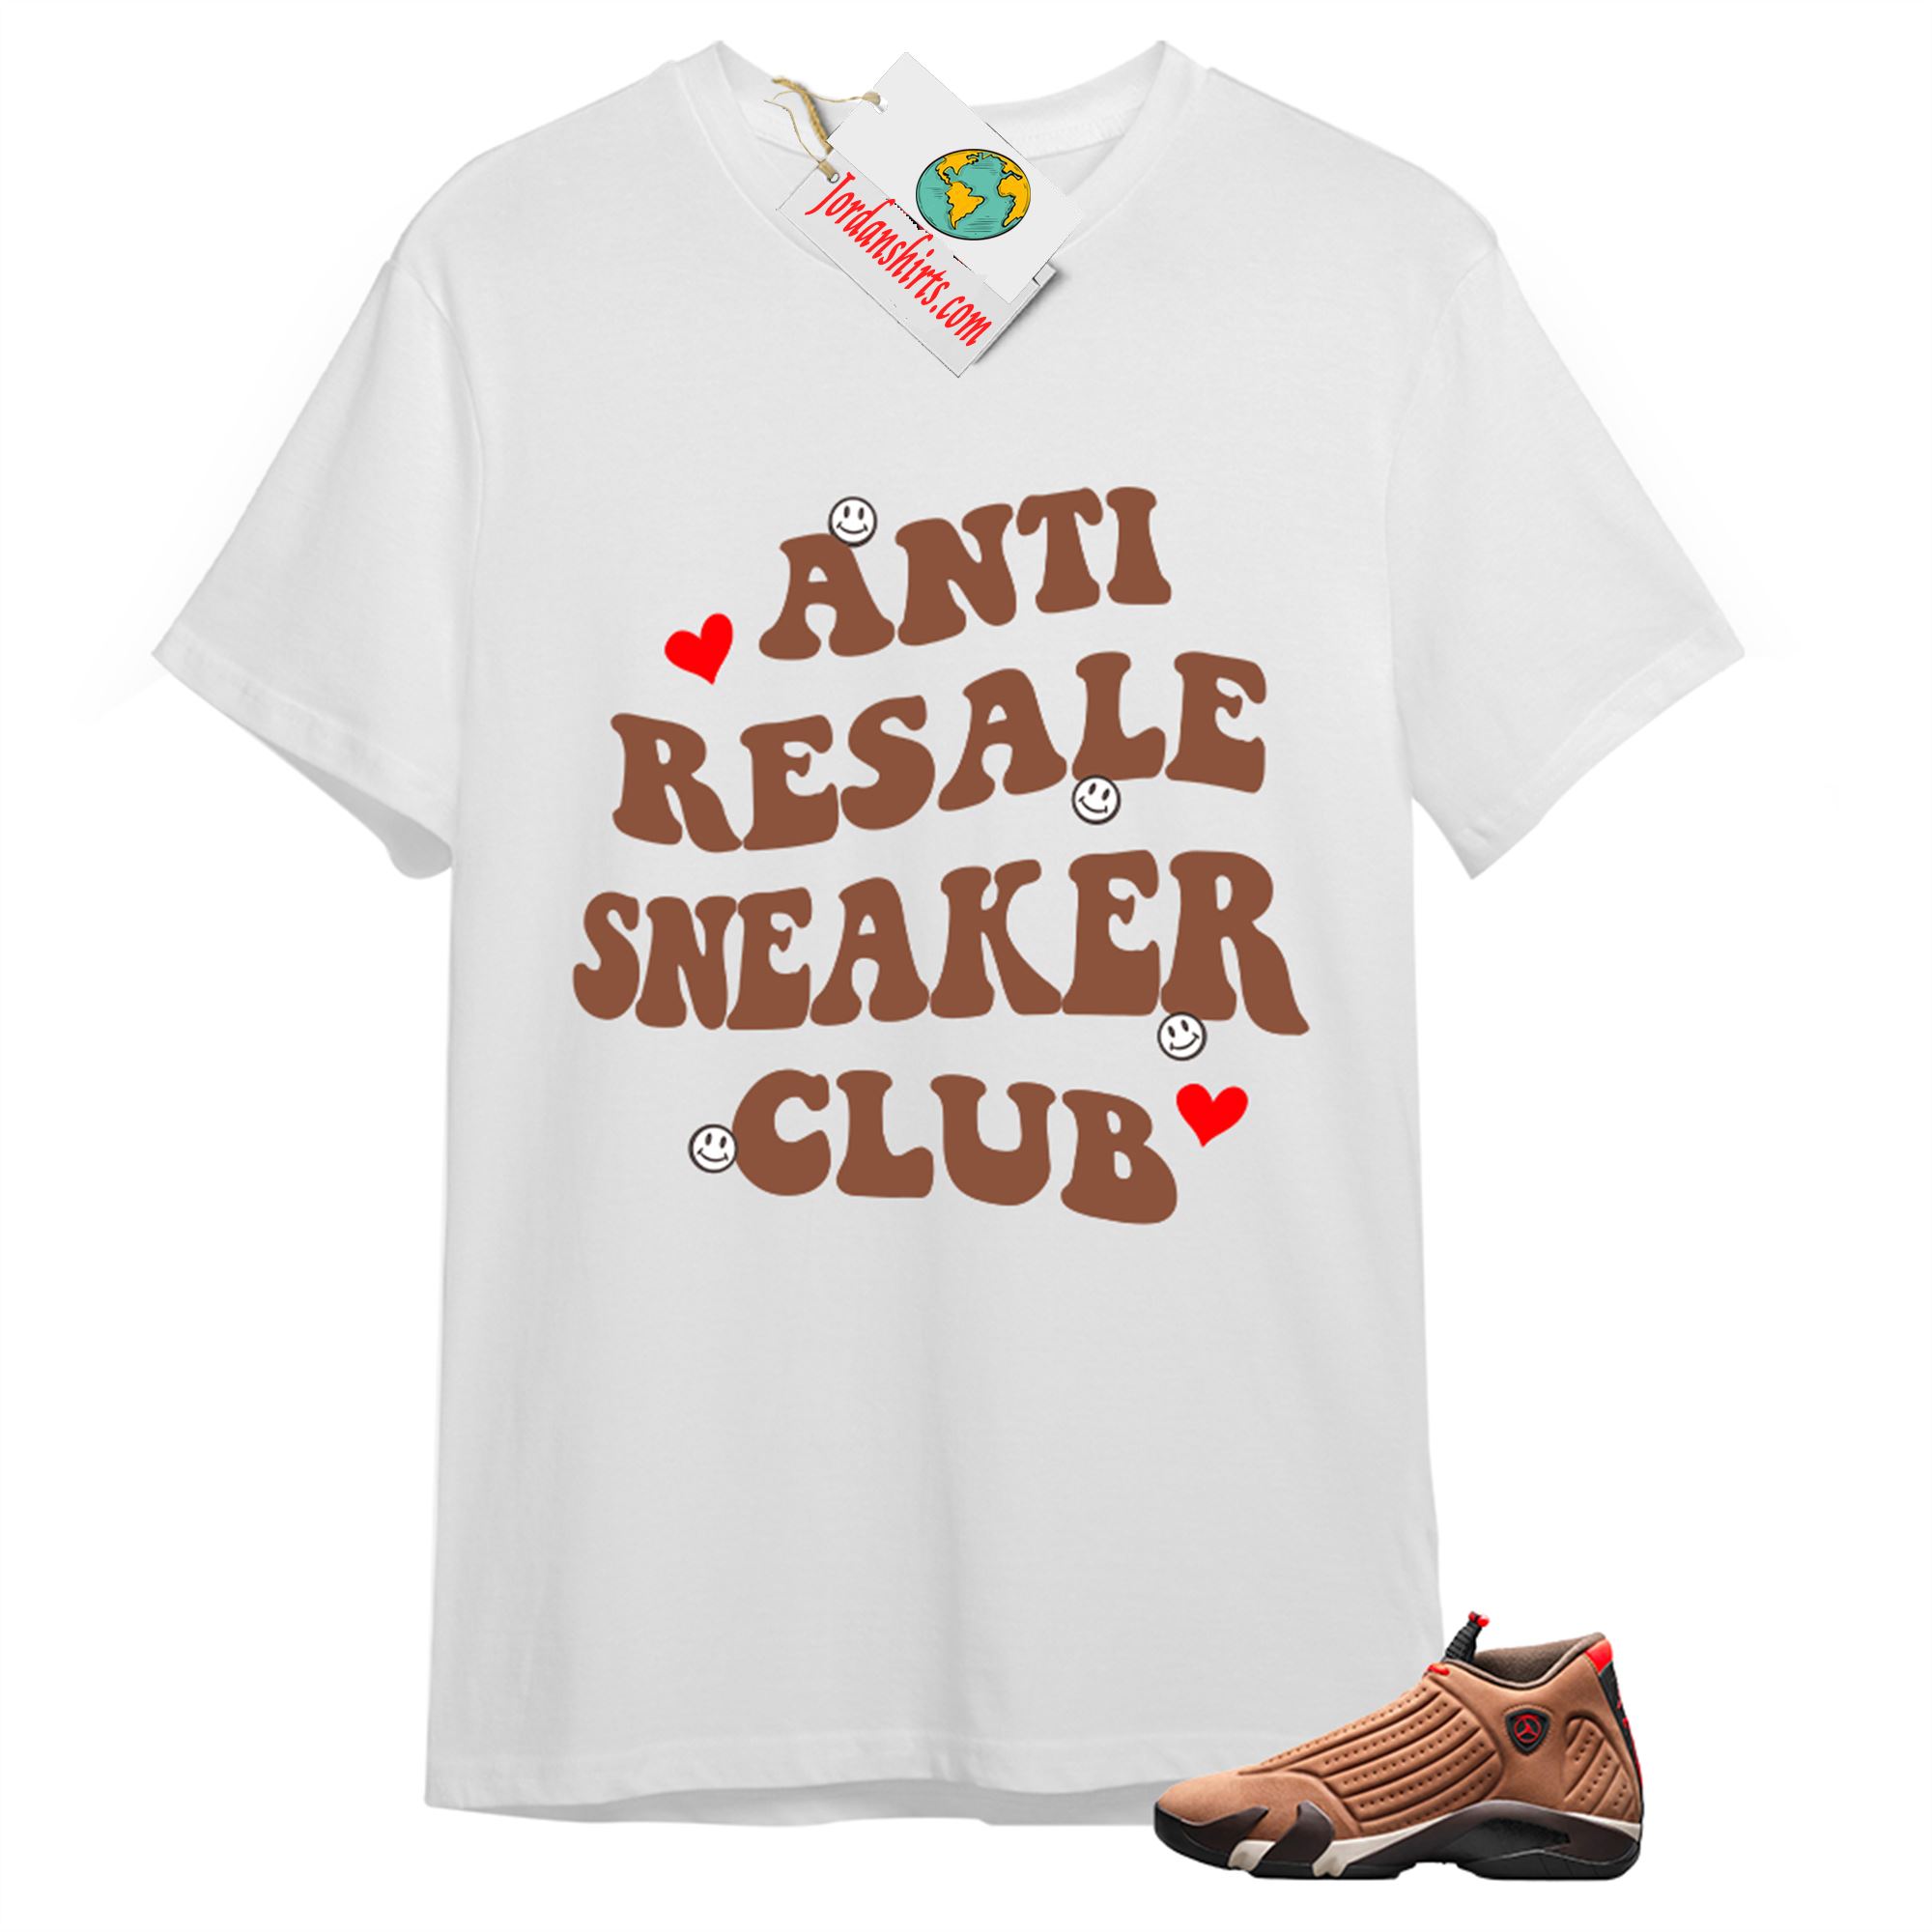 Jordan 14 Shirt, Anti Resale Sneaker Club White T-shirt Air Jordan 14 Winterized 14s Plus Size Up To 5xl